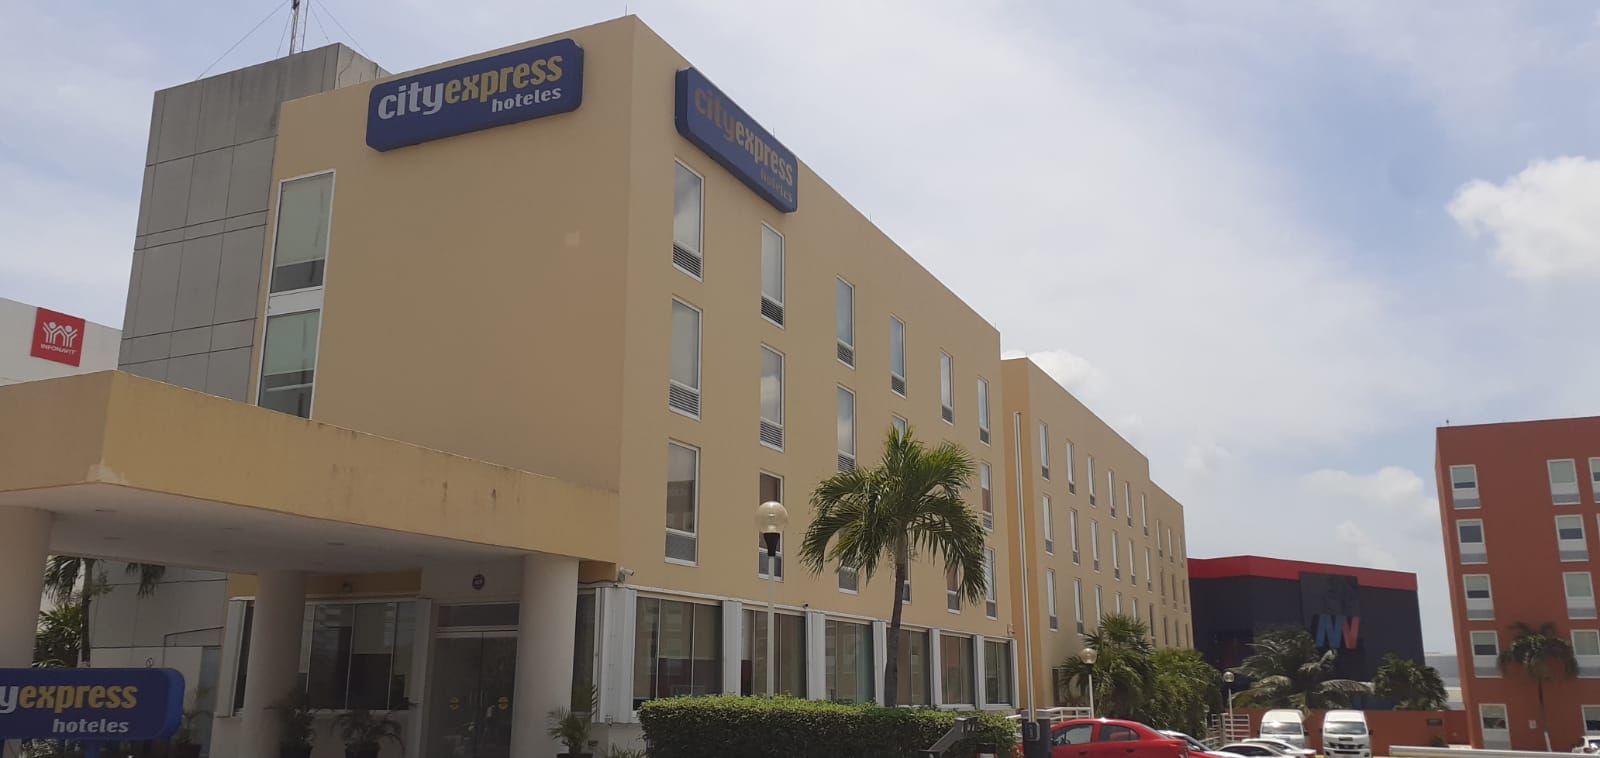 Turista británico se corta las venas en el hotel City Express de Cancún